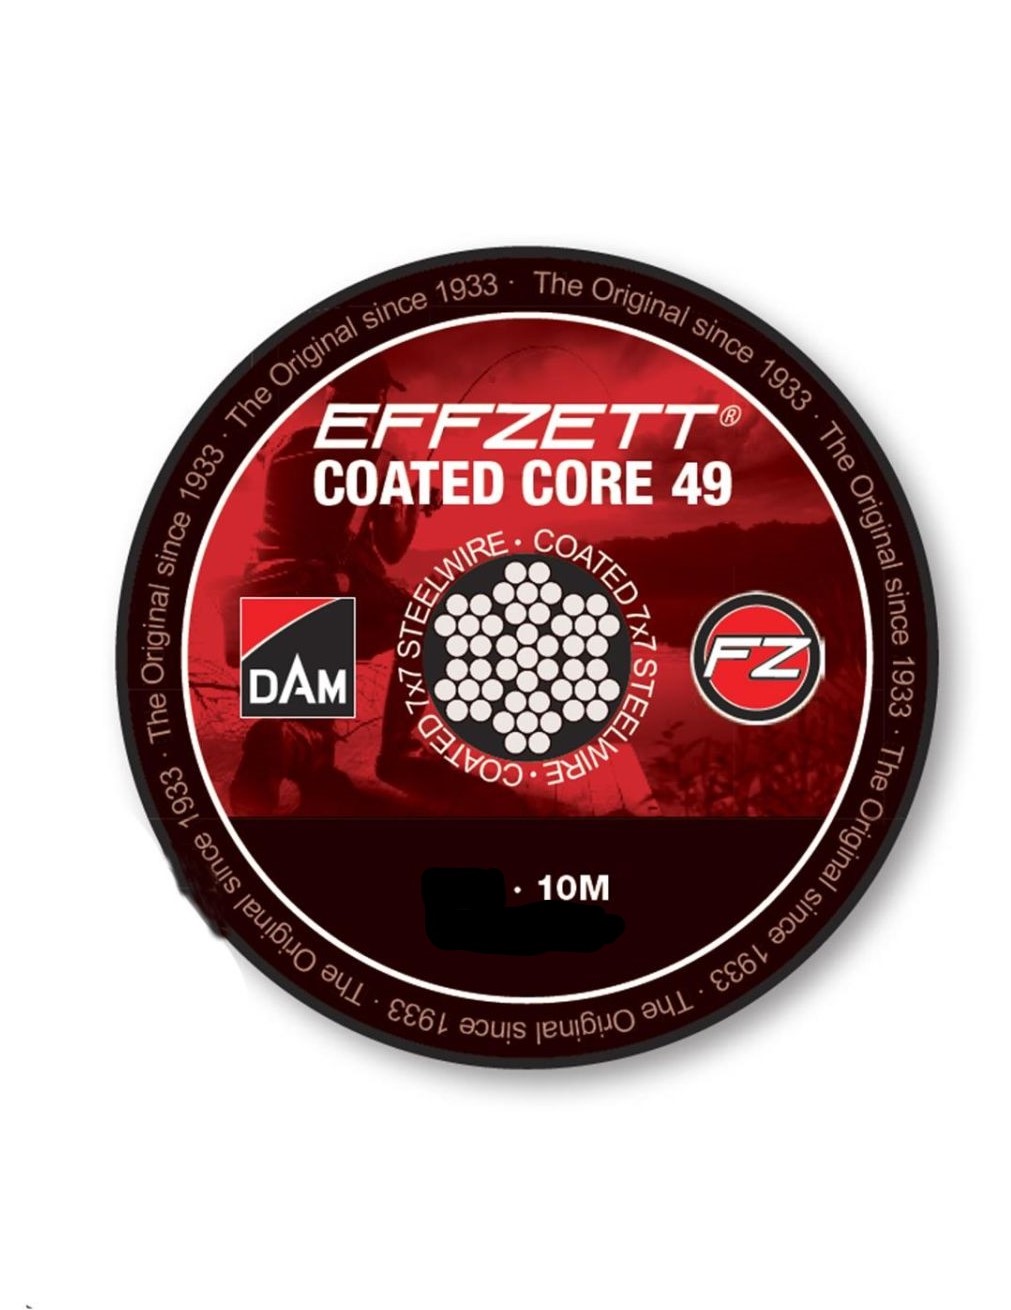 DAM Effzett Coated Core 49 7x7